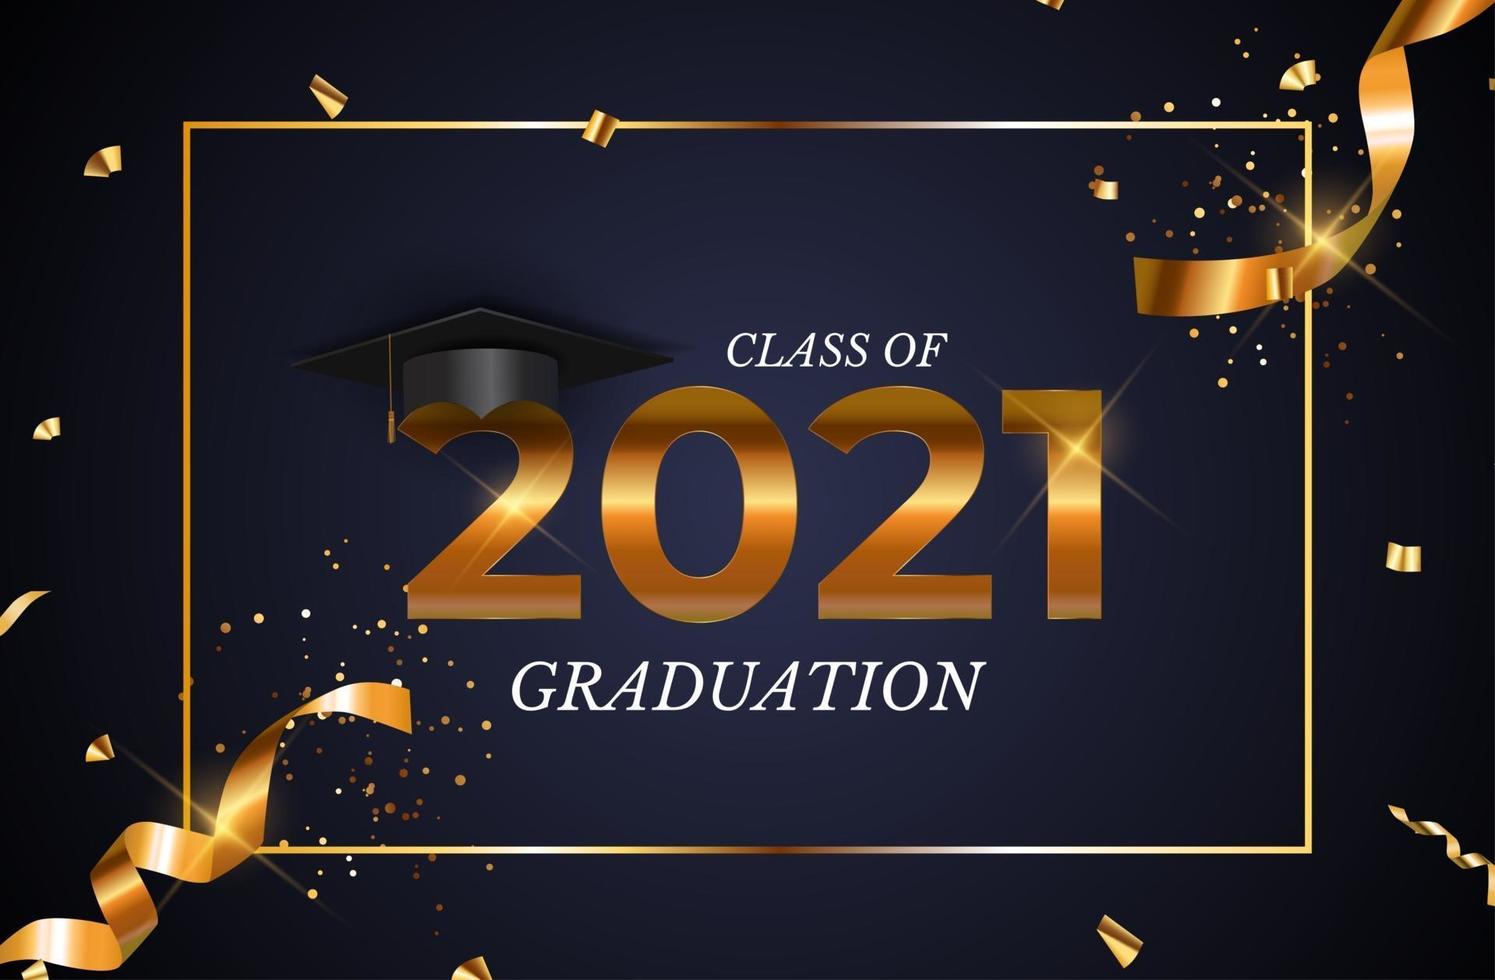 Abschlussklasse von 2021 mit Abschlusshut, Konfetti und goldenem Band vektor